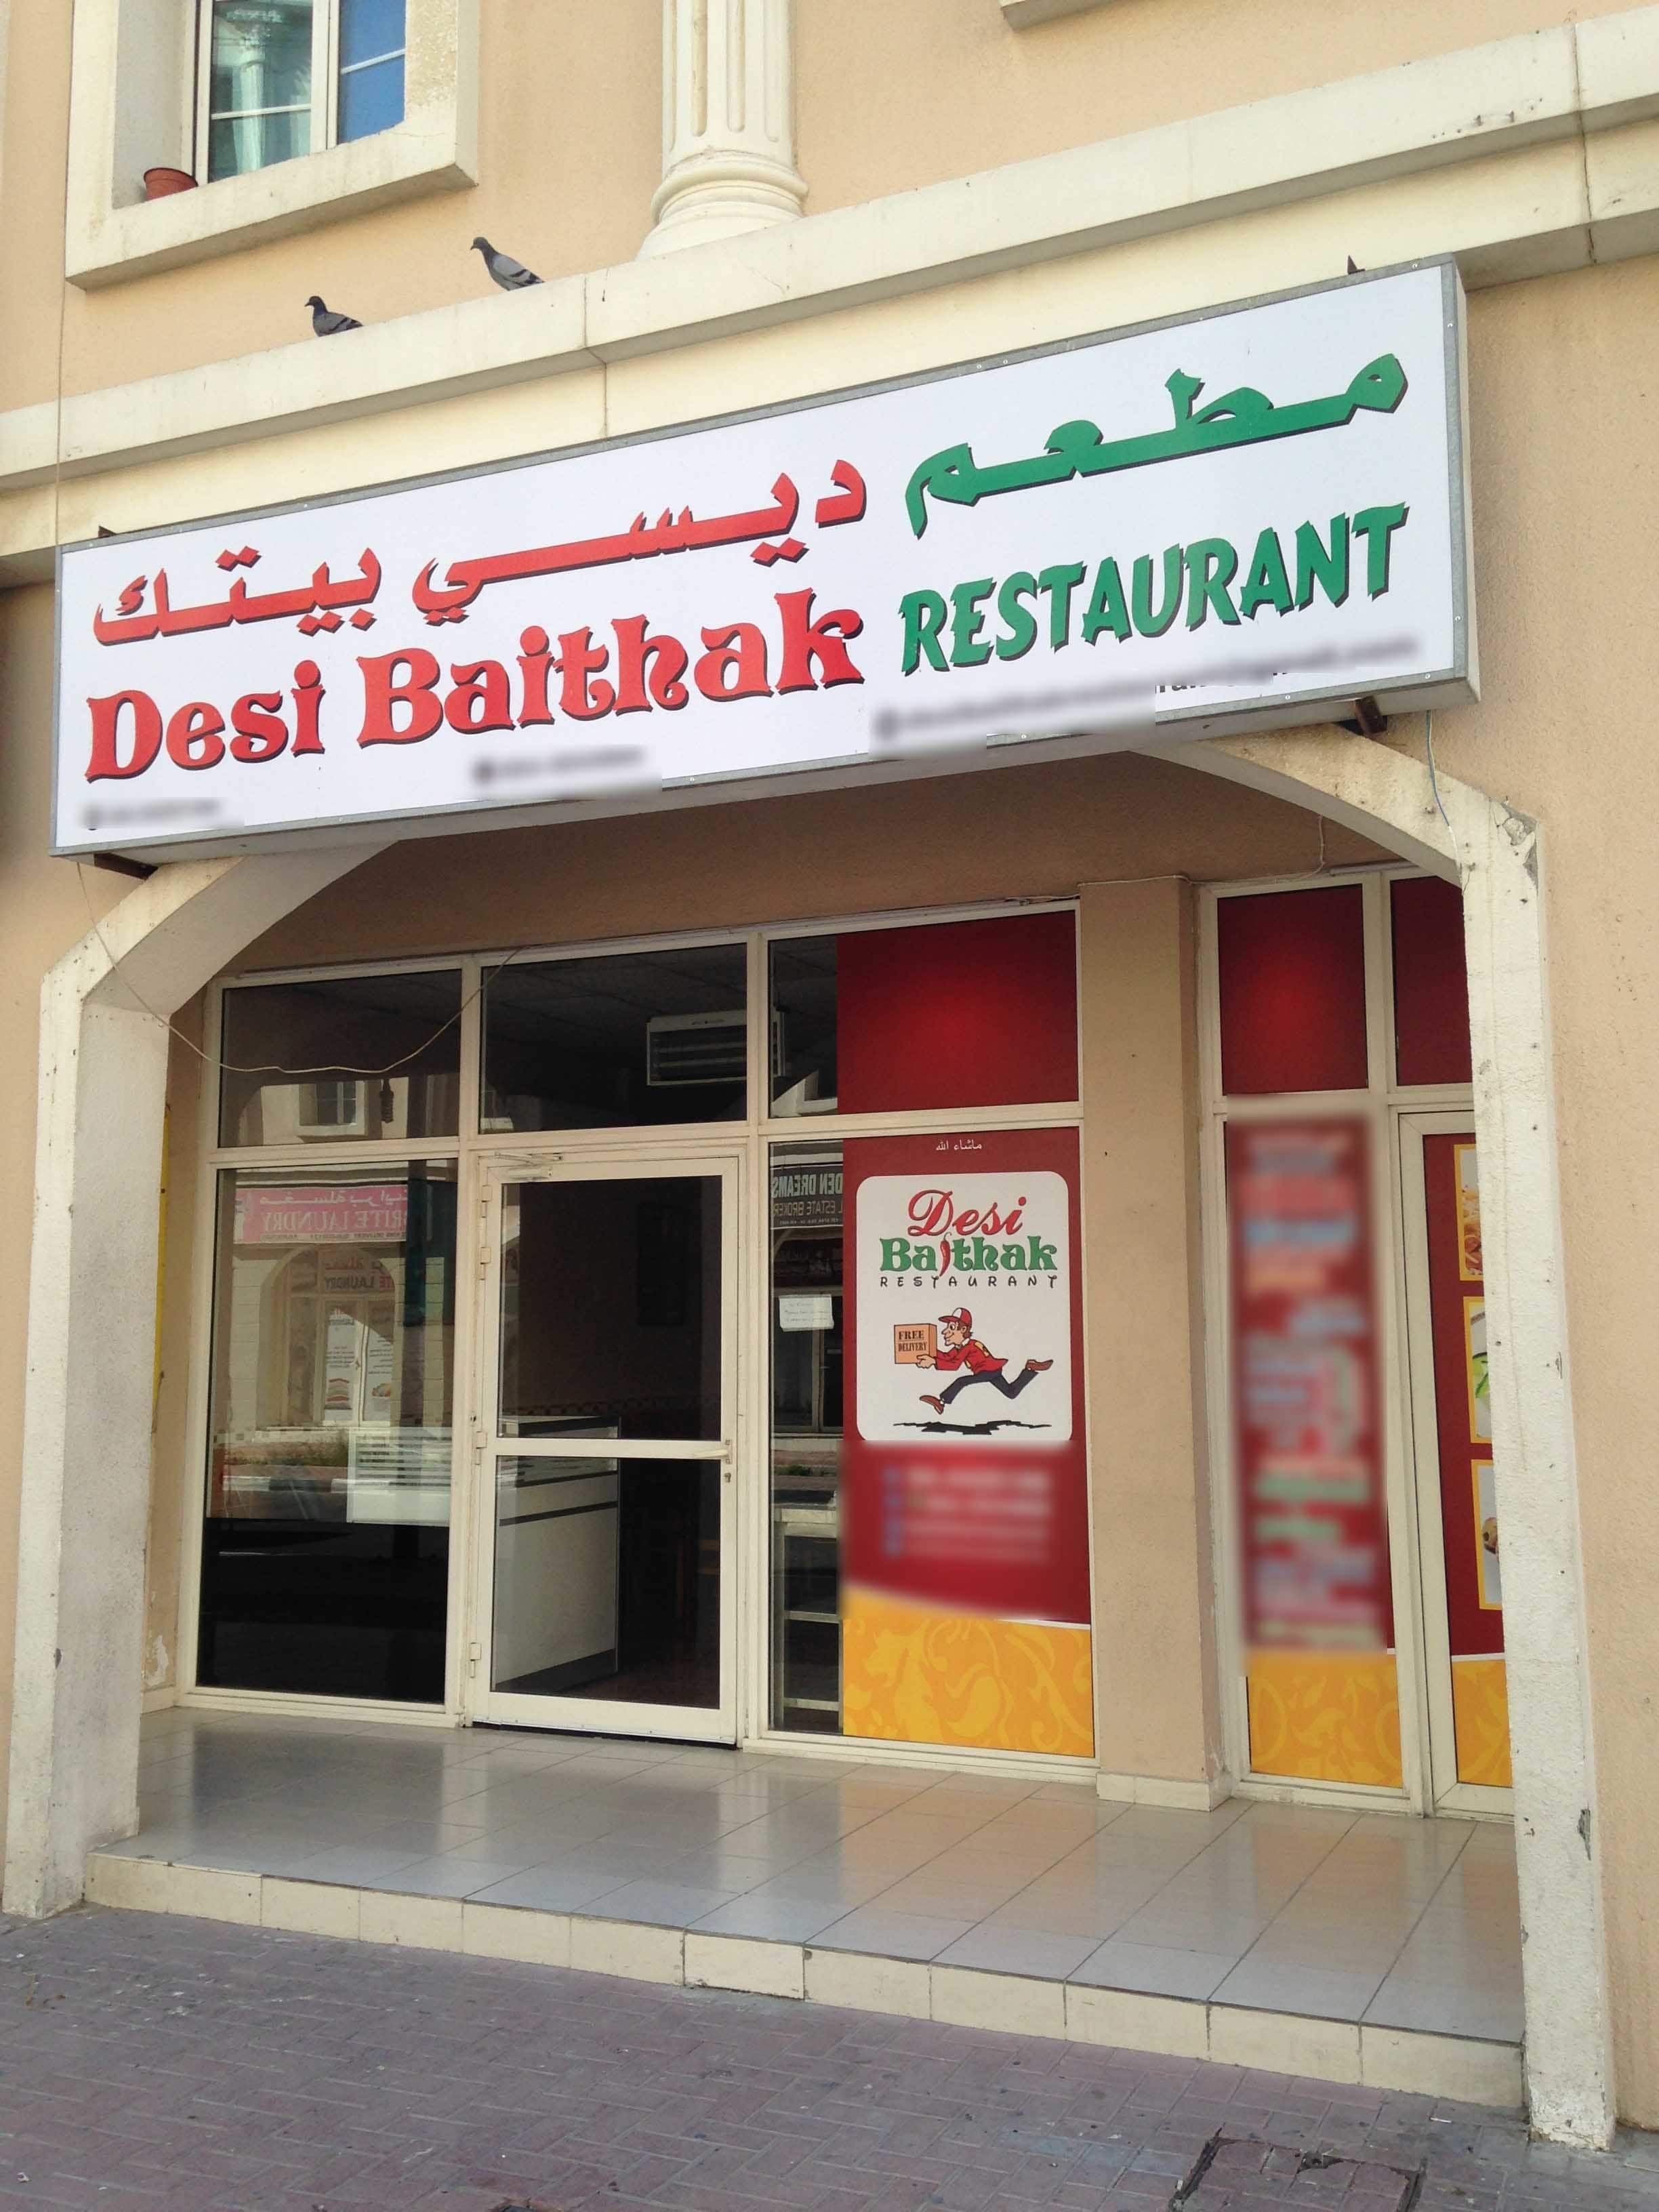 Desi Baithak Restaurant International City Dubai - Baithak Restaurant Dubai